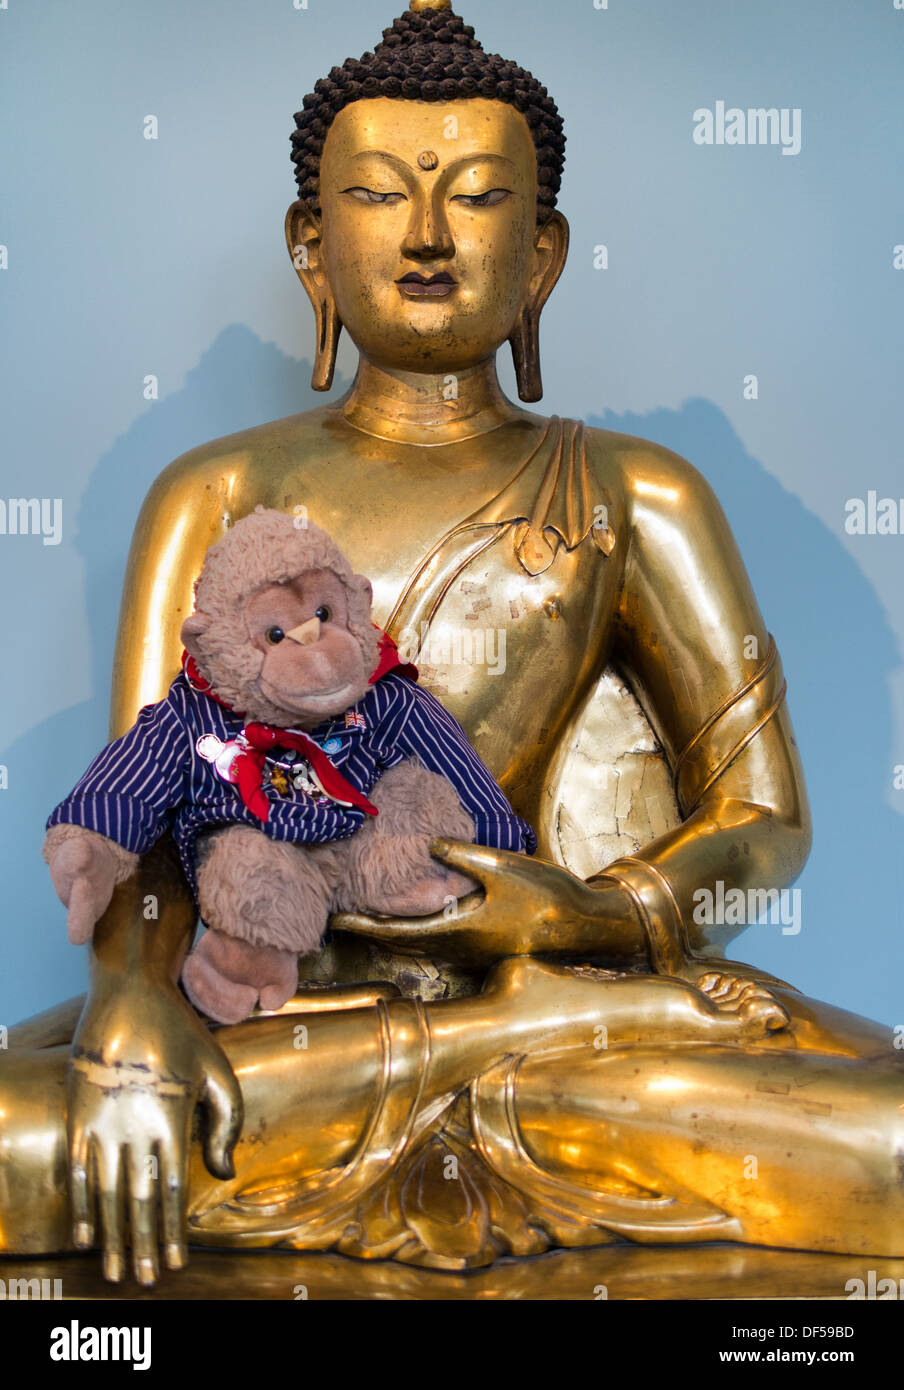 Le Victoria and Albert Museum, Londres - golden Bouddha Tibétain avec Isabelle moelleux surprenant Banque D'Images